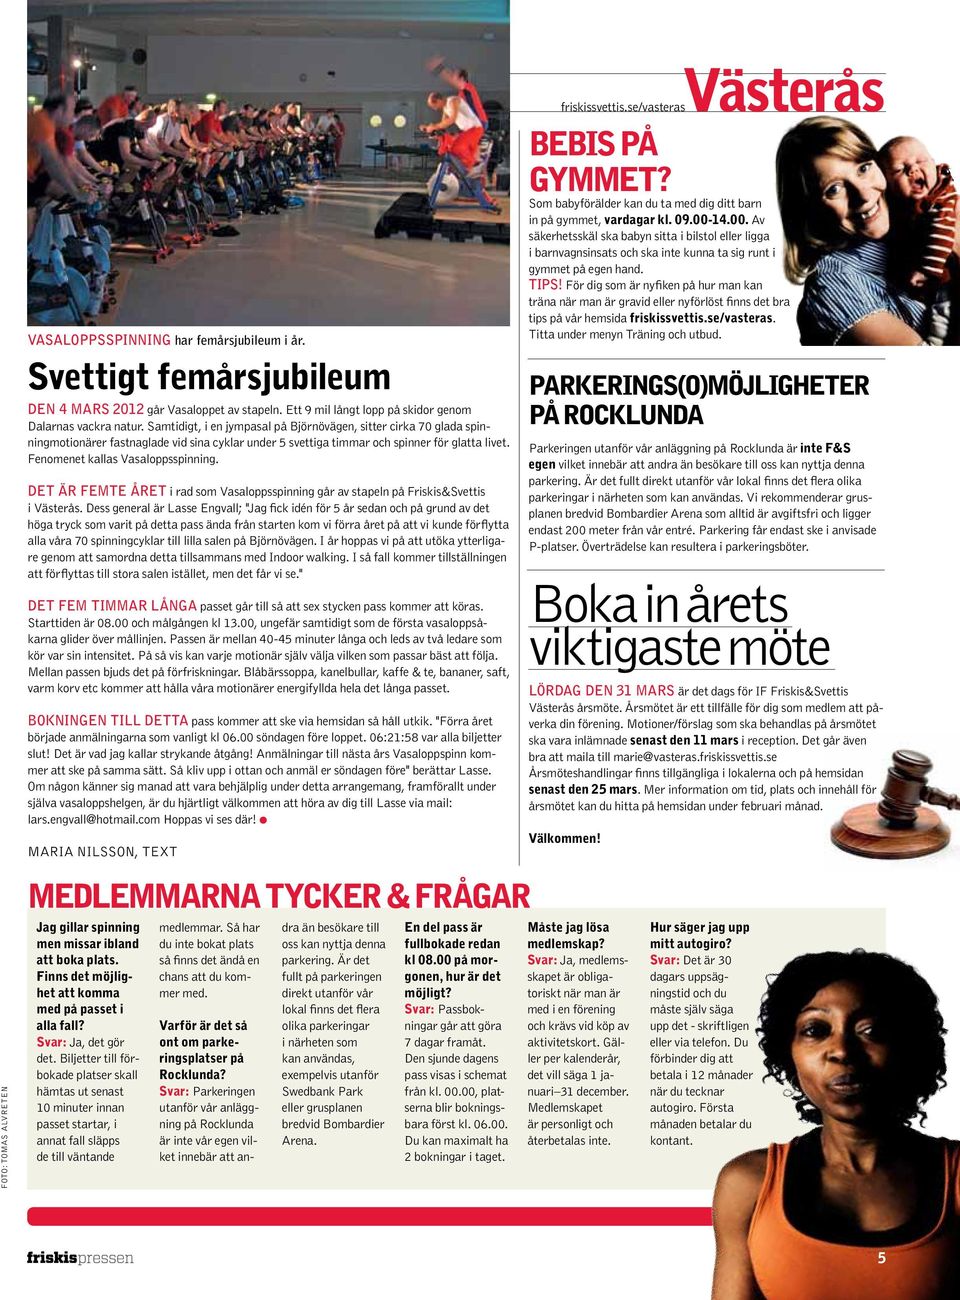 det är femte året i rad som Vasaloppsspinning går av stapeln på Friskis&Svettis i Västerås.